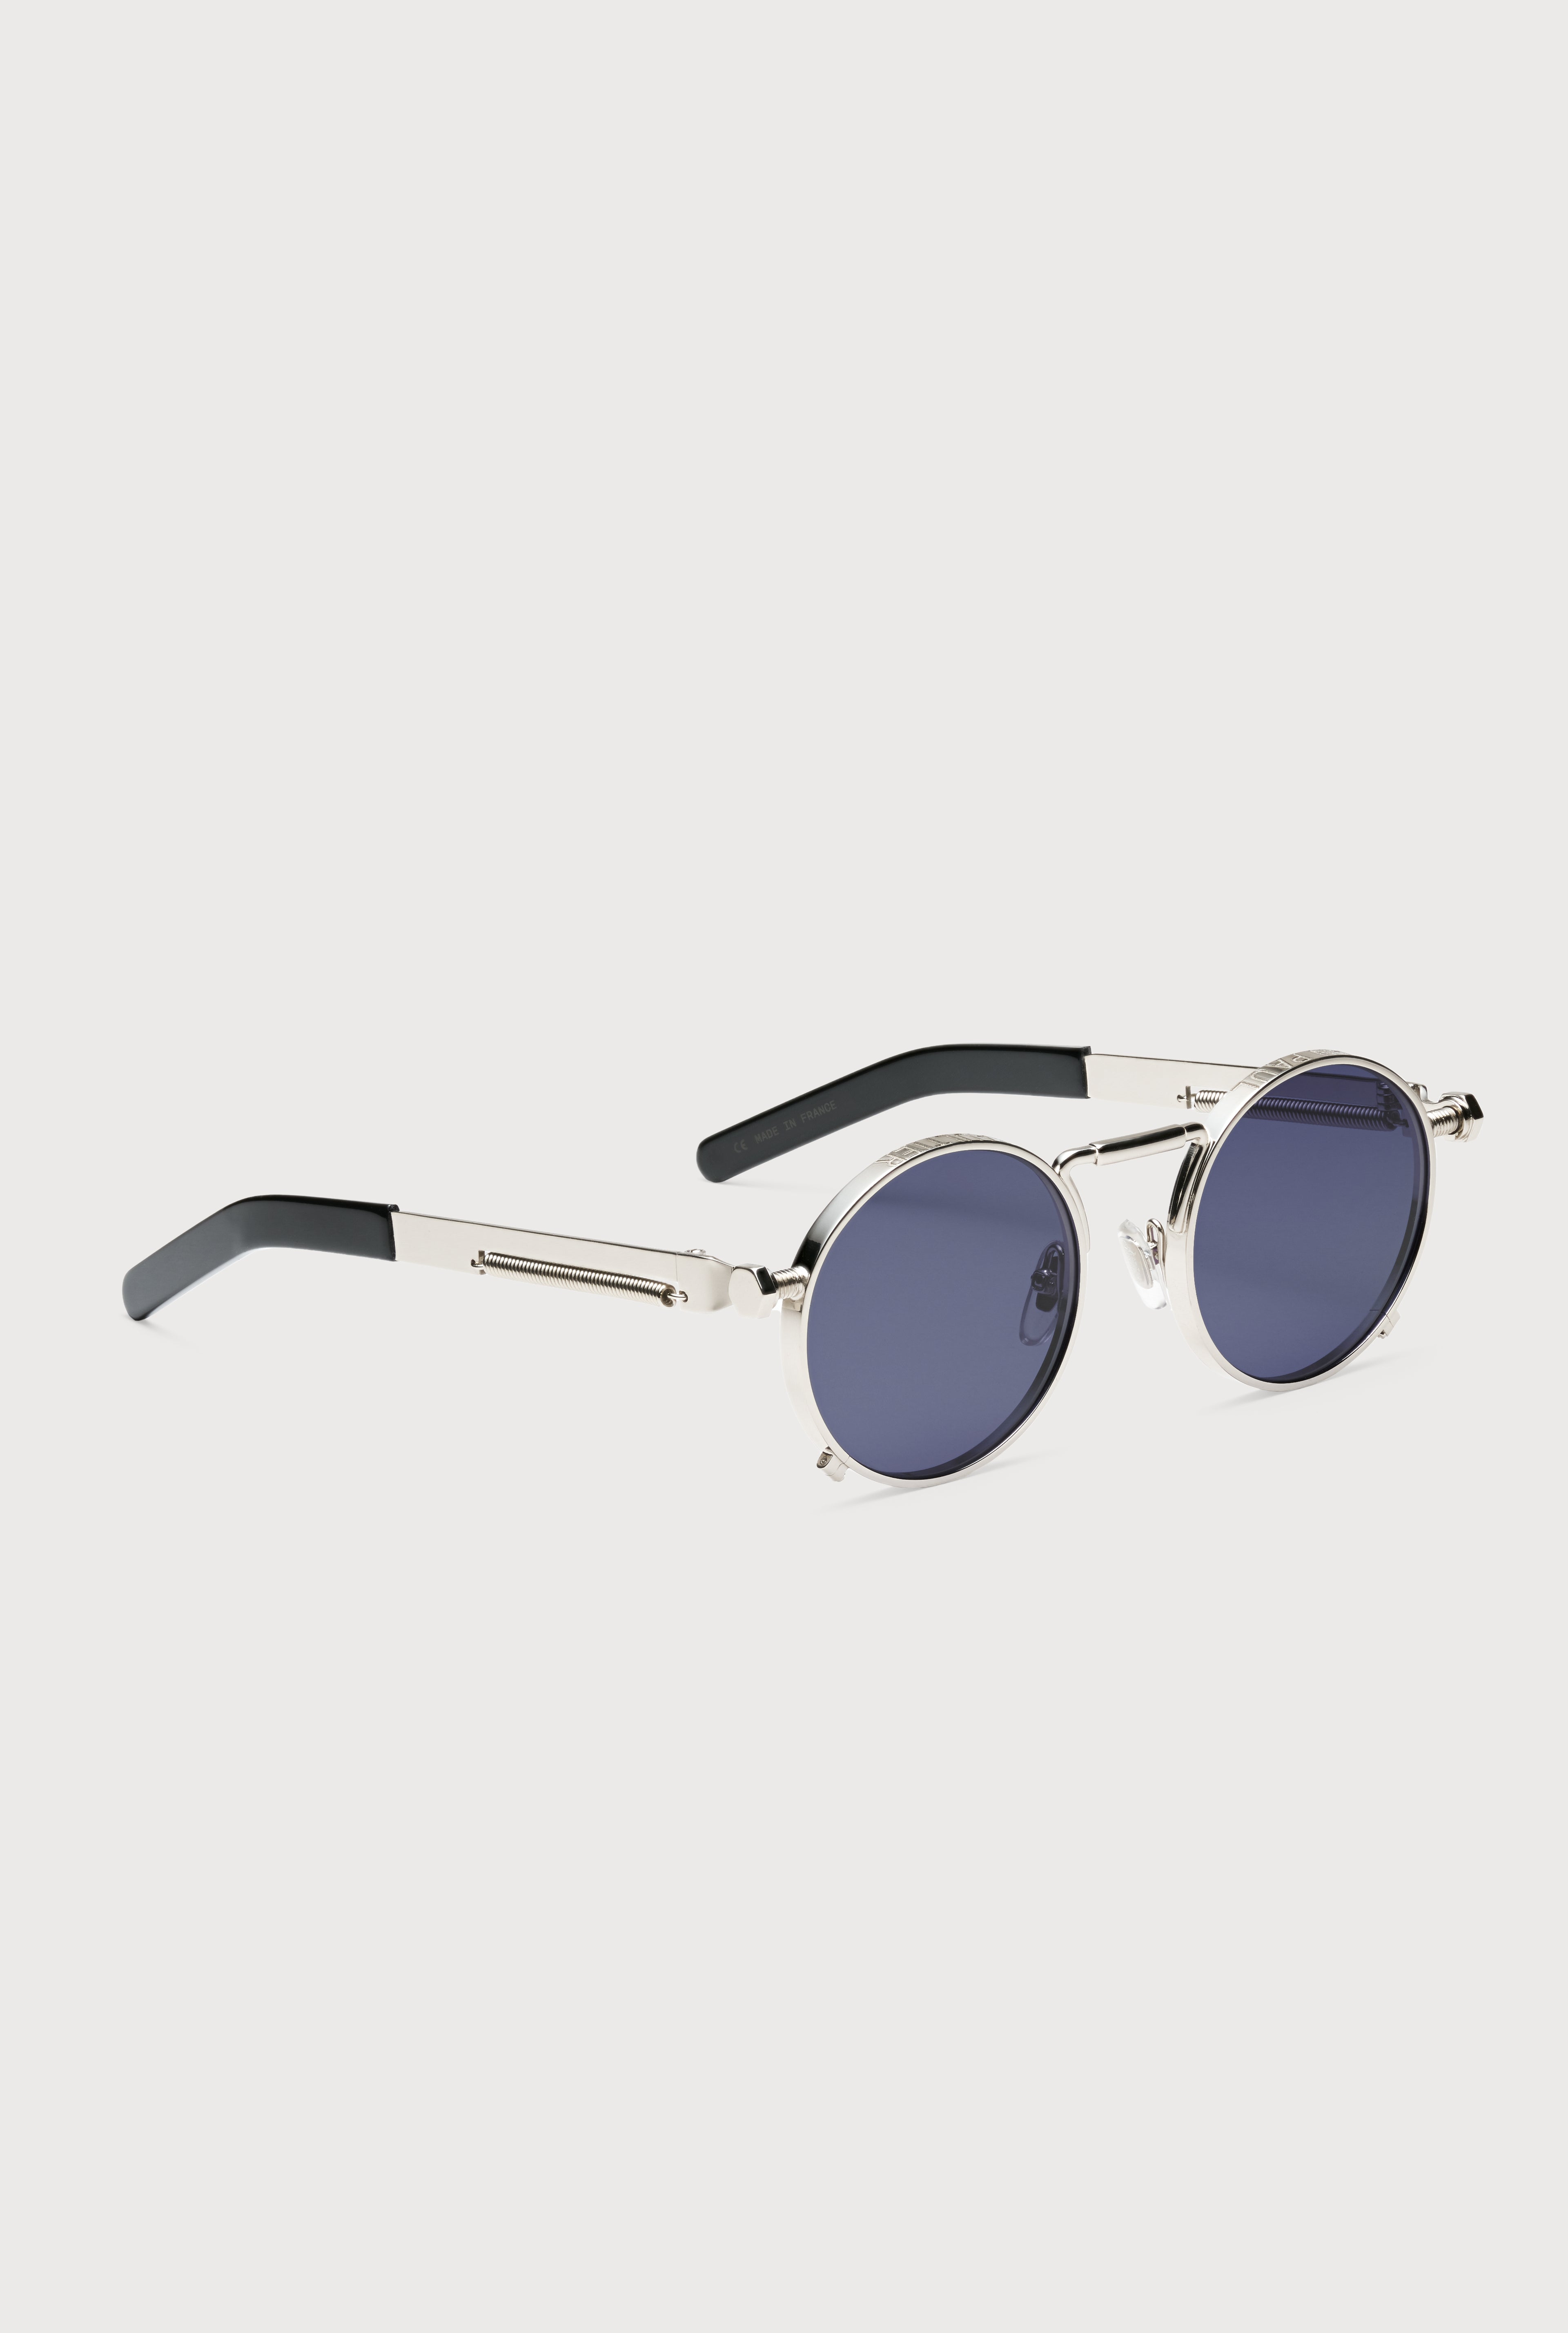 The Silver 56-8171 Sunglasses